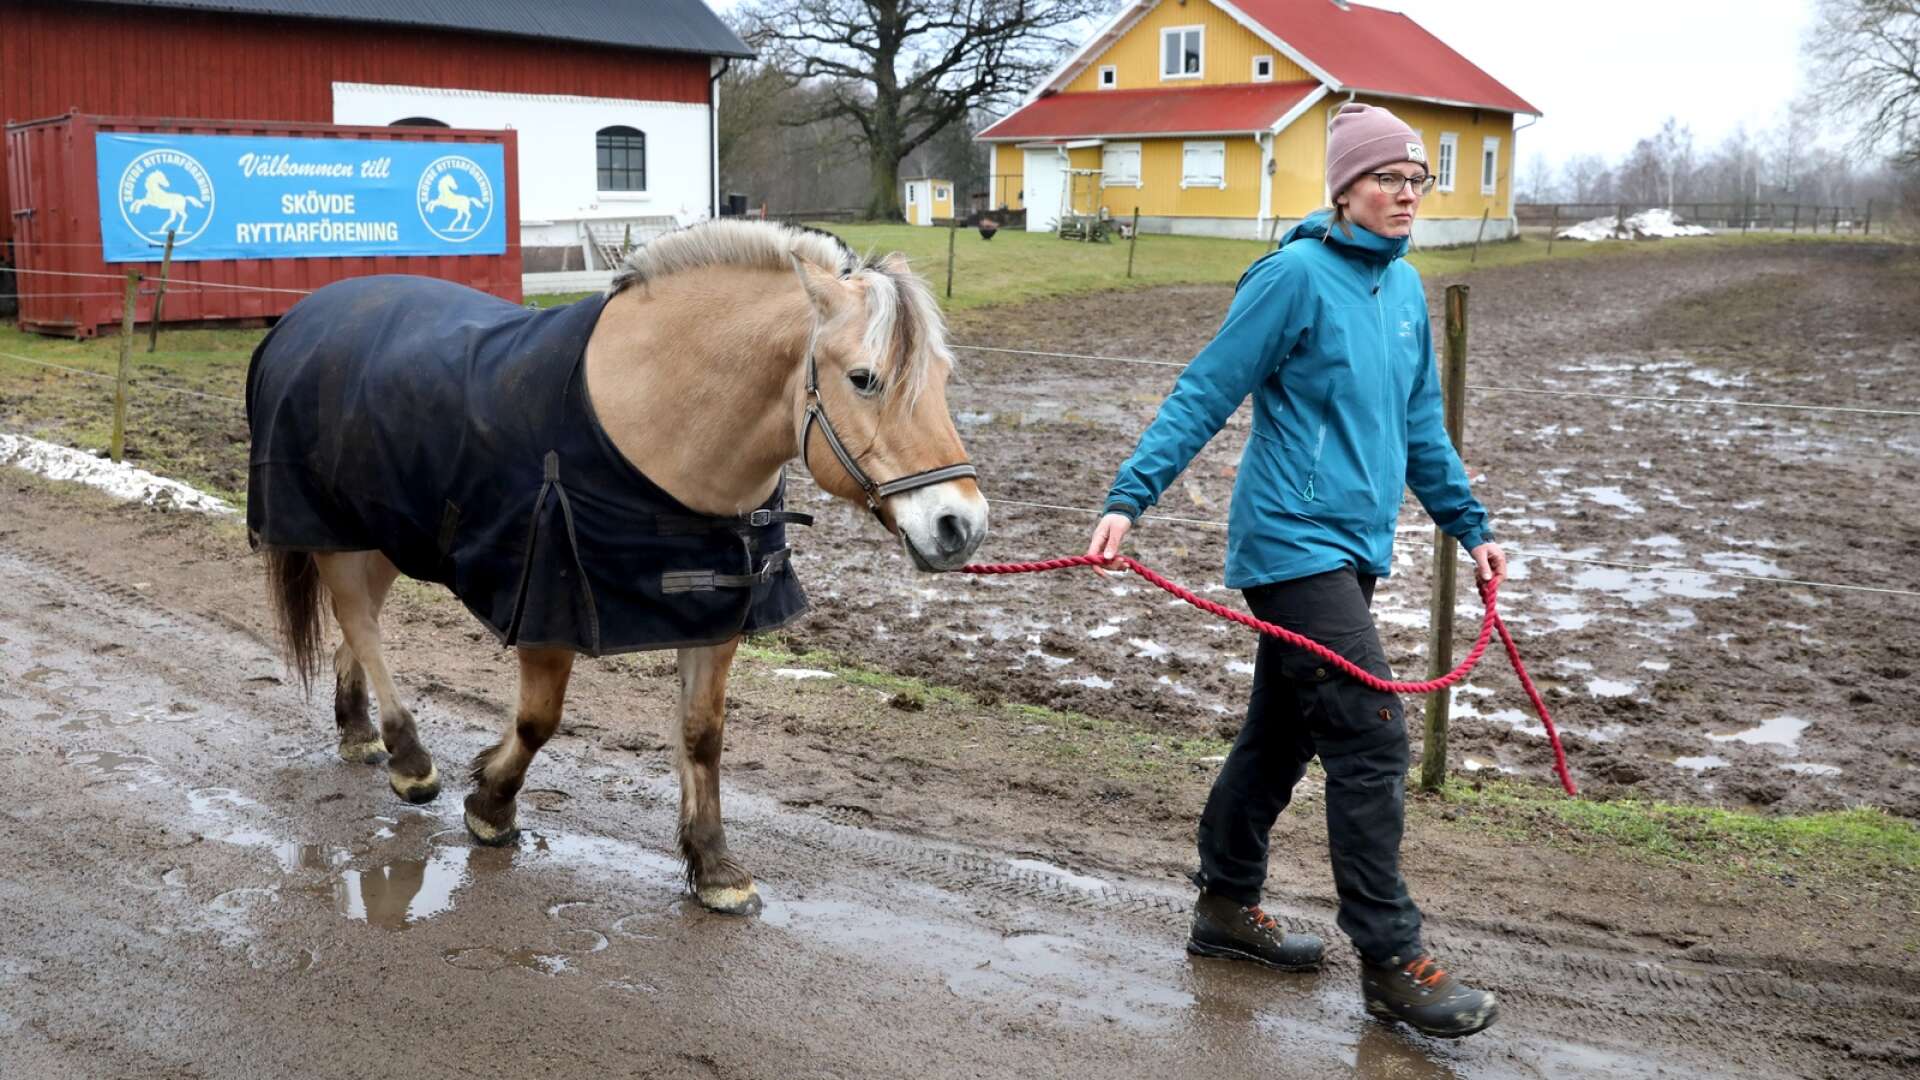 Fjordingen Valdo, 22 år, är en av ridskolans trotjänare som är värd att få gå i ”pension”. Sofia Lestander, Skövde Ryttarförening, säger att de önskar ett stort kapitaltillskott för att kunna köpa in nya hästar till ridskoleverksamheten.